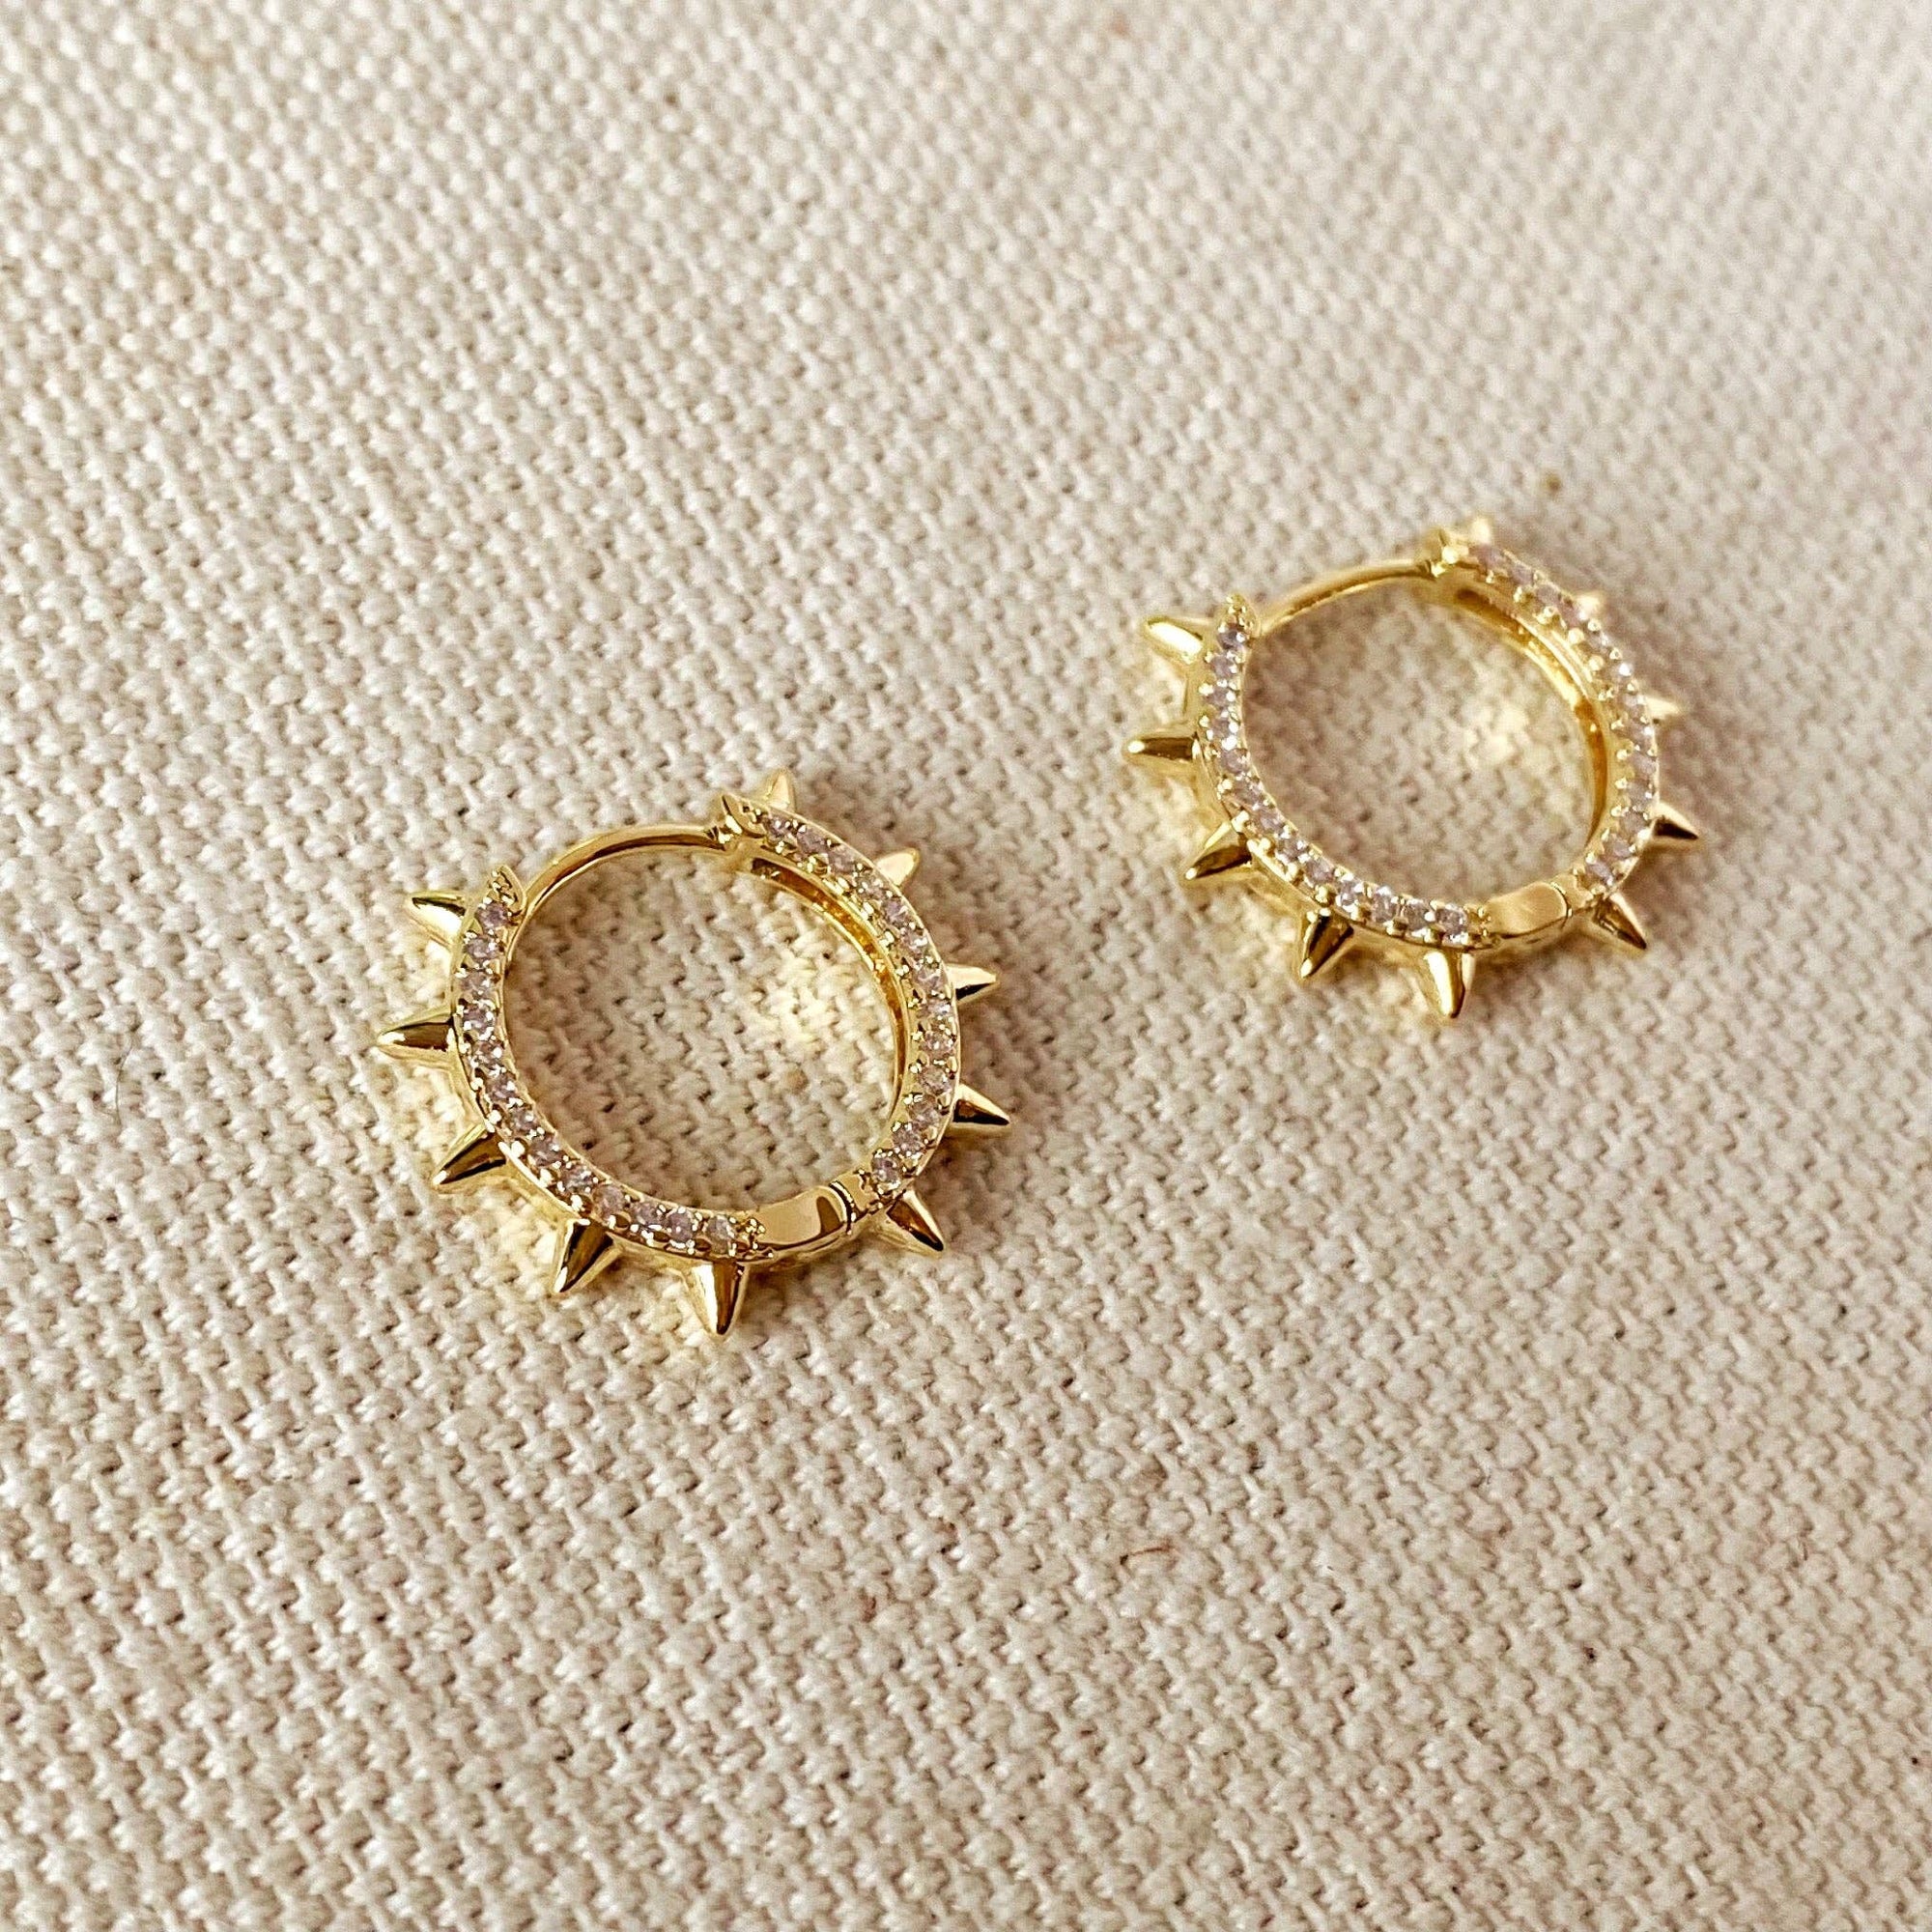 Spike Hoop Earrings With Cubic Zirconia Detail, 18k Gold Filled, Abigail Fox - Abigail Fox Designs